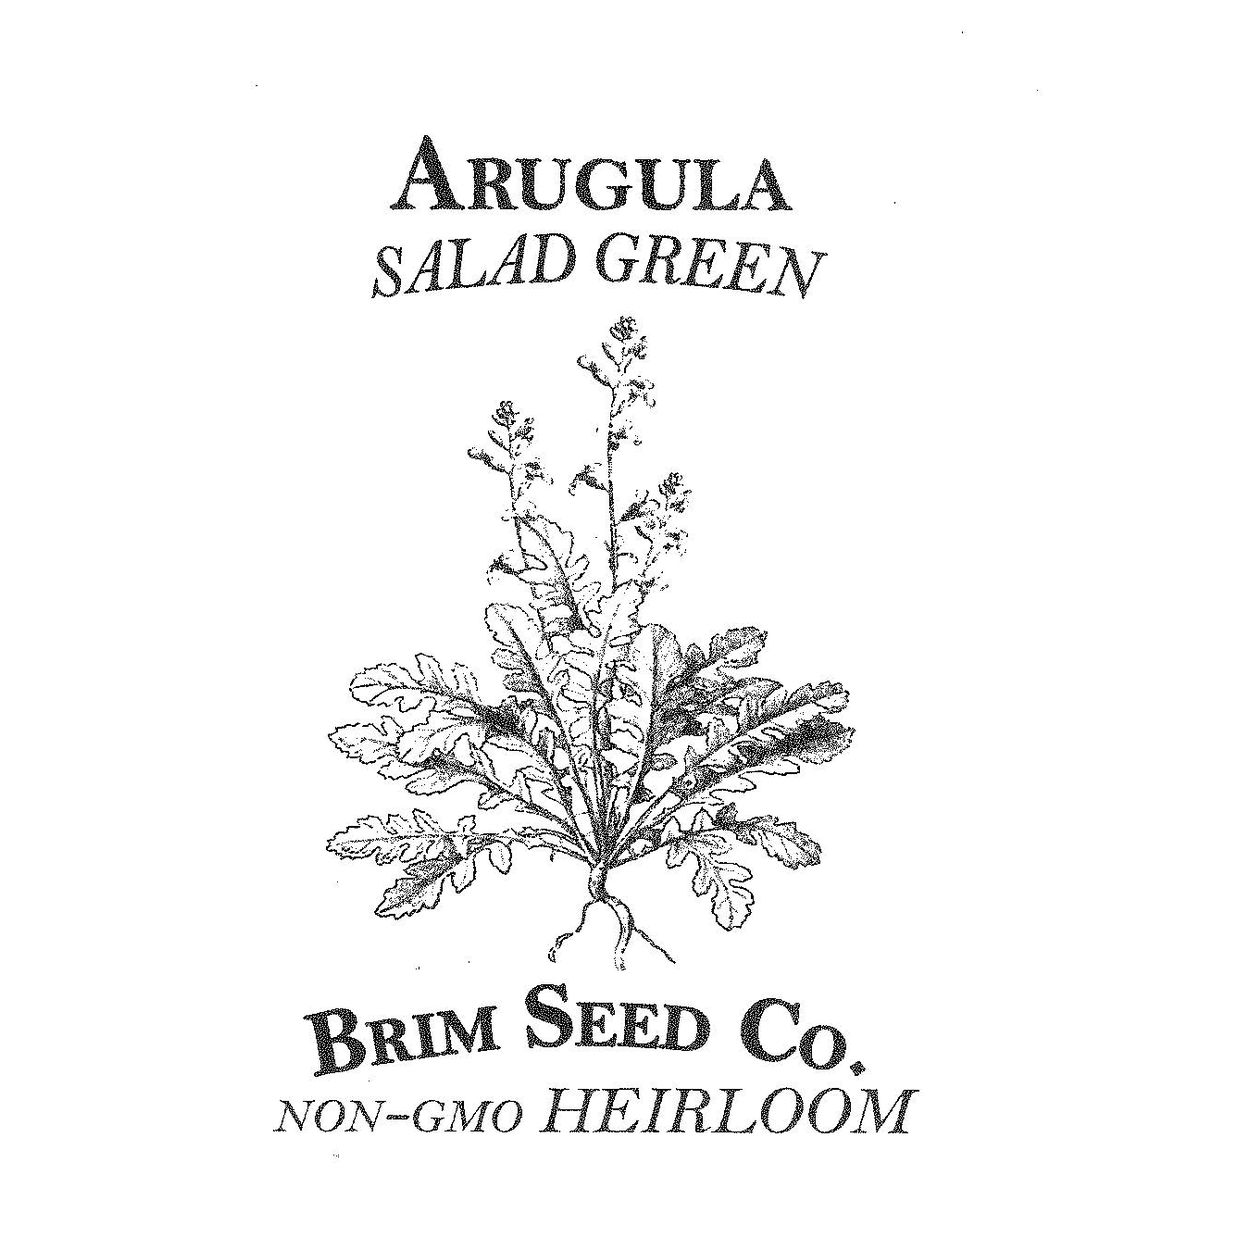 Brim Seed Co. - Arugula Salad Greens Heirloom Seed